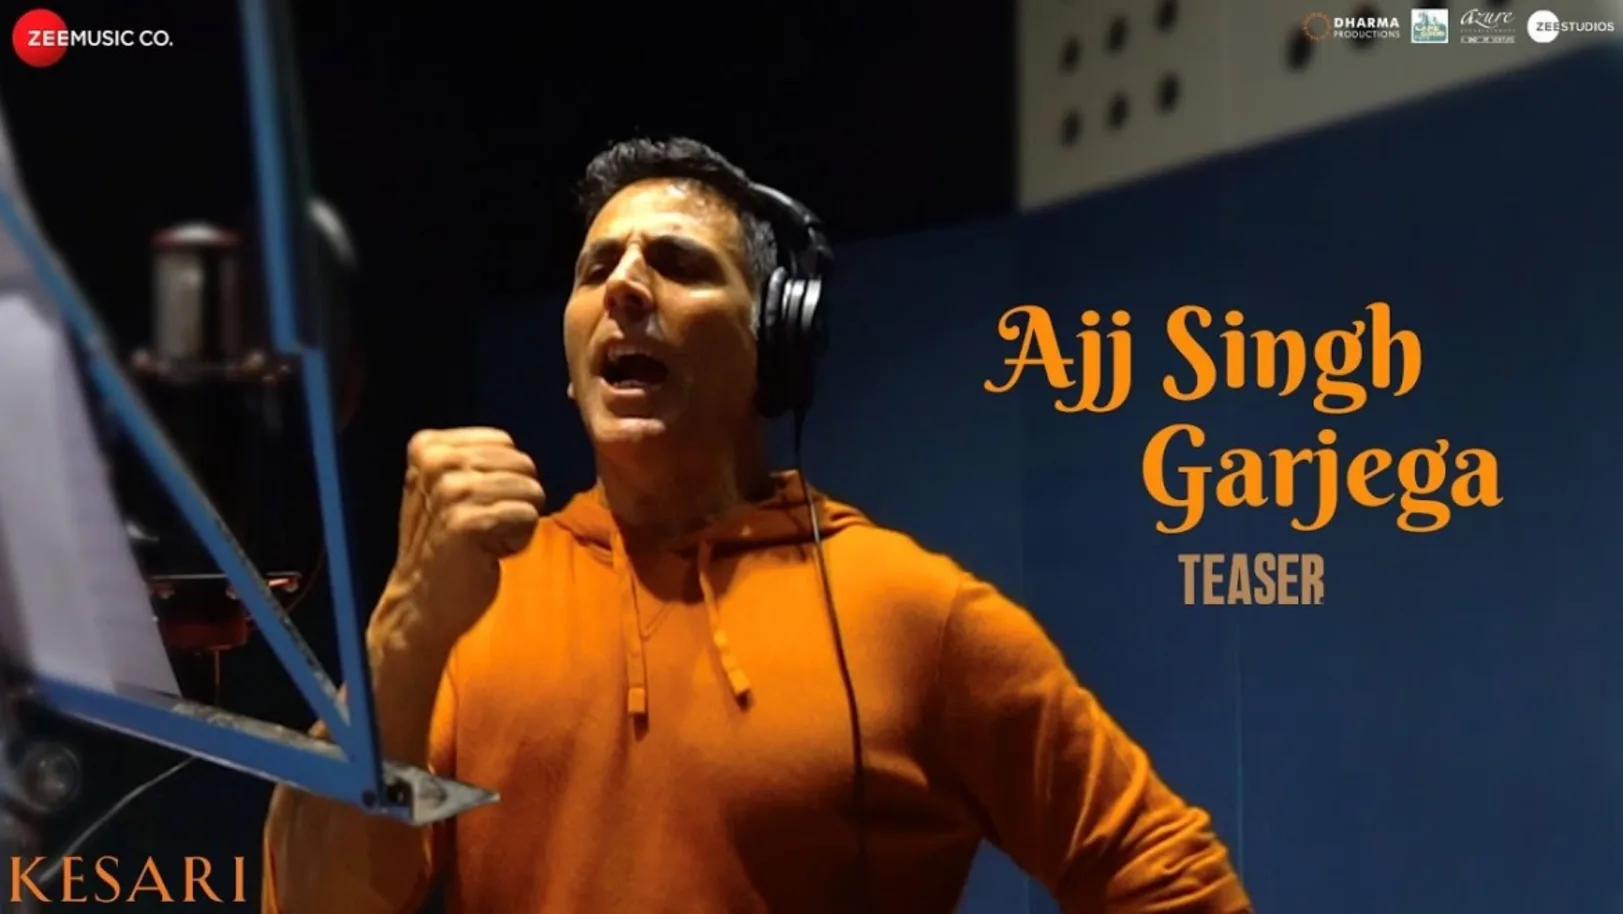 Ajj Singh Garjega (Teaser) - Kesari | Akshay Kumar | Parineeti Chopra